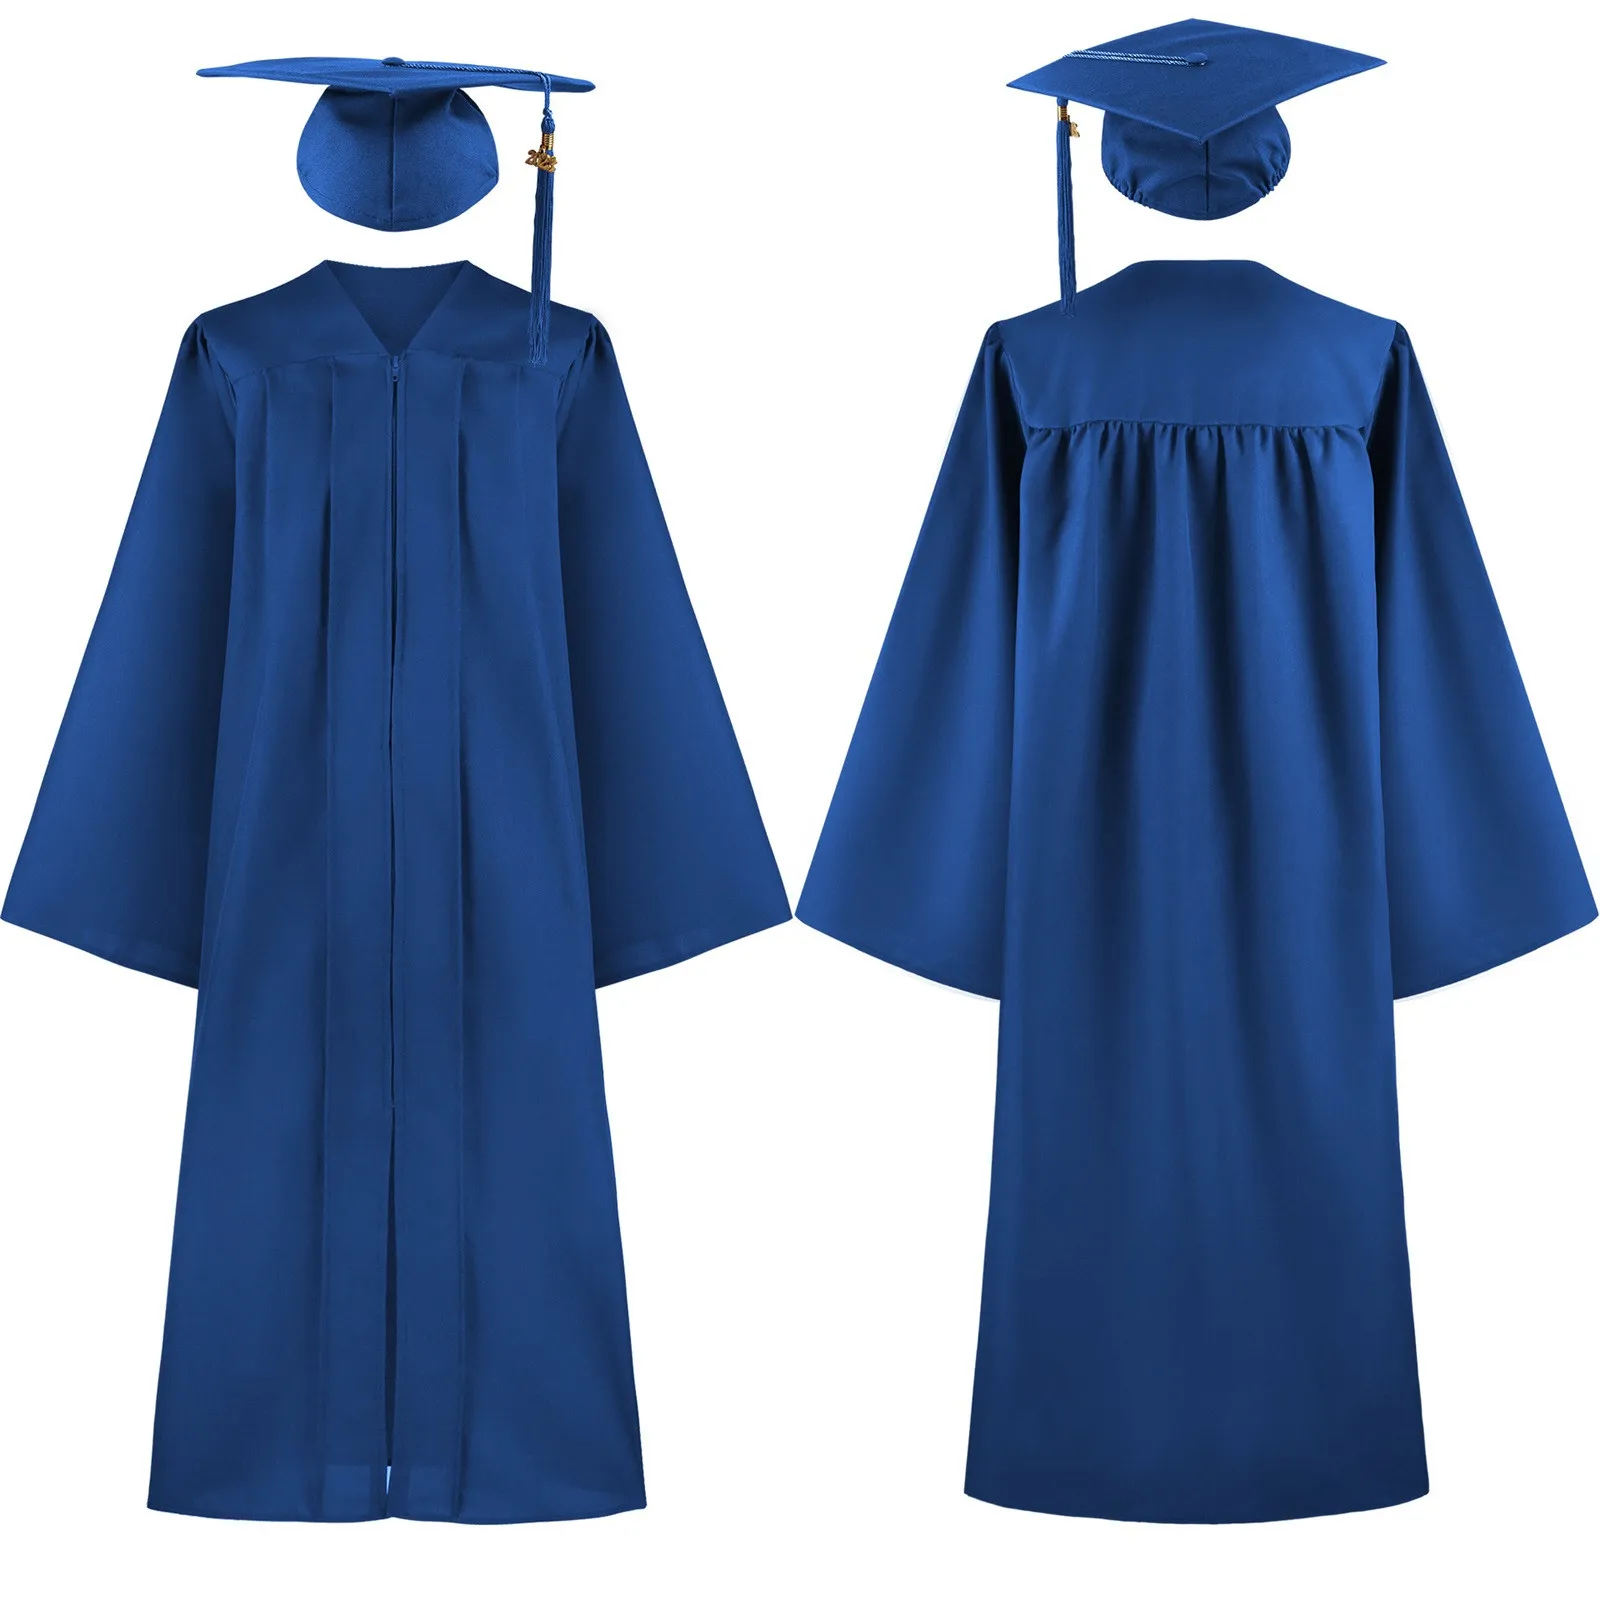 

2024 школьное студенческое платье для старшей школы, студенческое платье на выпускной, с бахромой, на молнии, с V-образным вырезом, свободный костюм на выпускной, платье для бакалавра